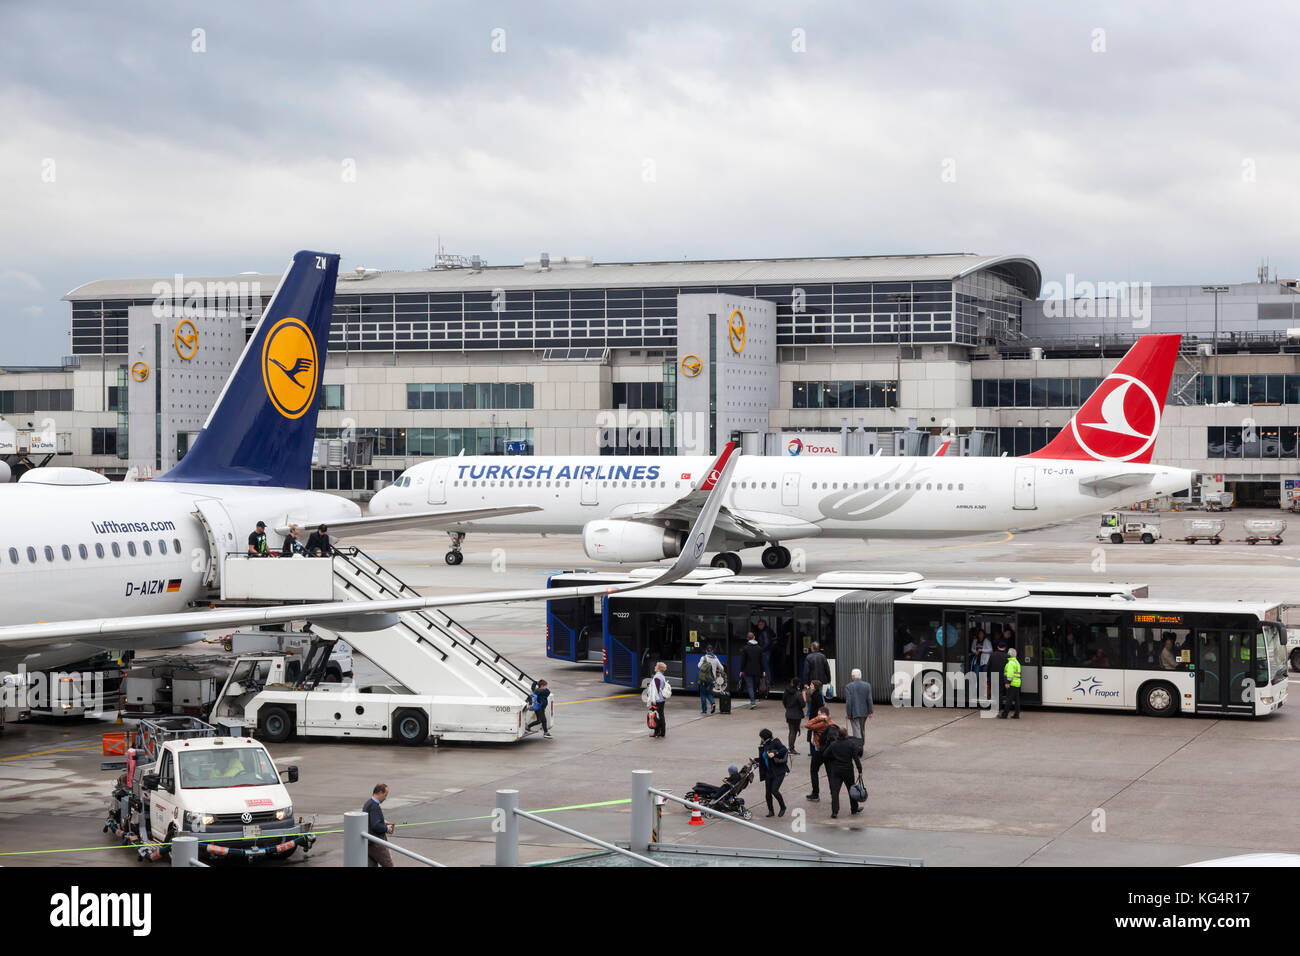 Francfort, Allemagne - 10 oct 2017 : Turkish Airlines airbus A321 et Airbus A320 Lufthansa à l'aéroport international de Francfort Banque D'Images